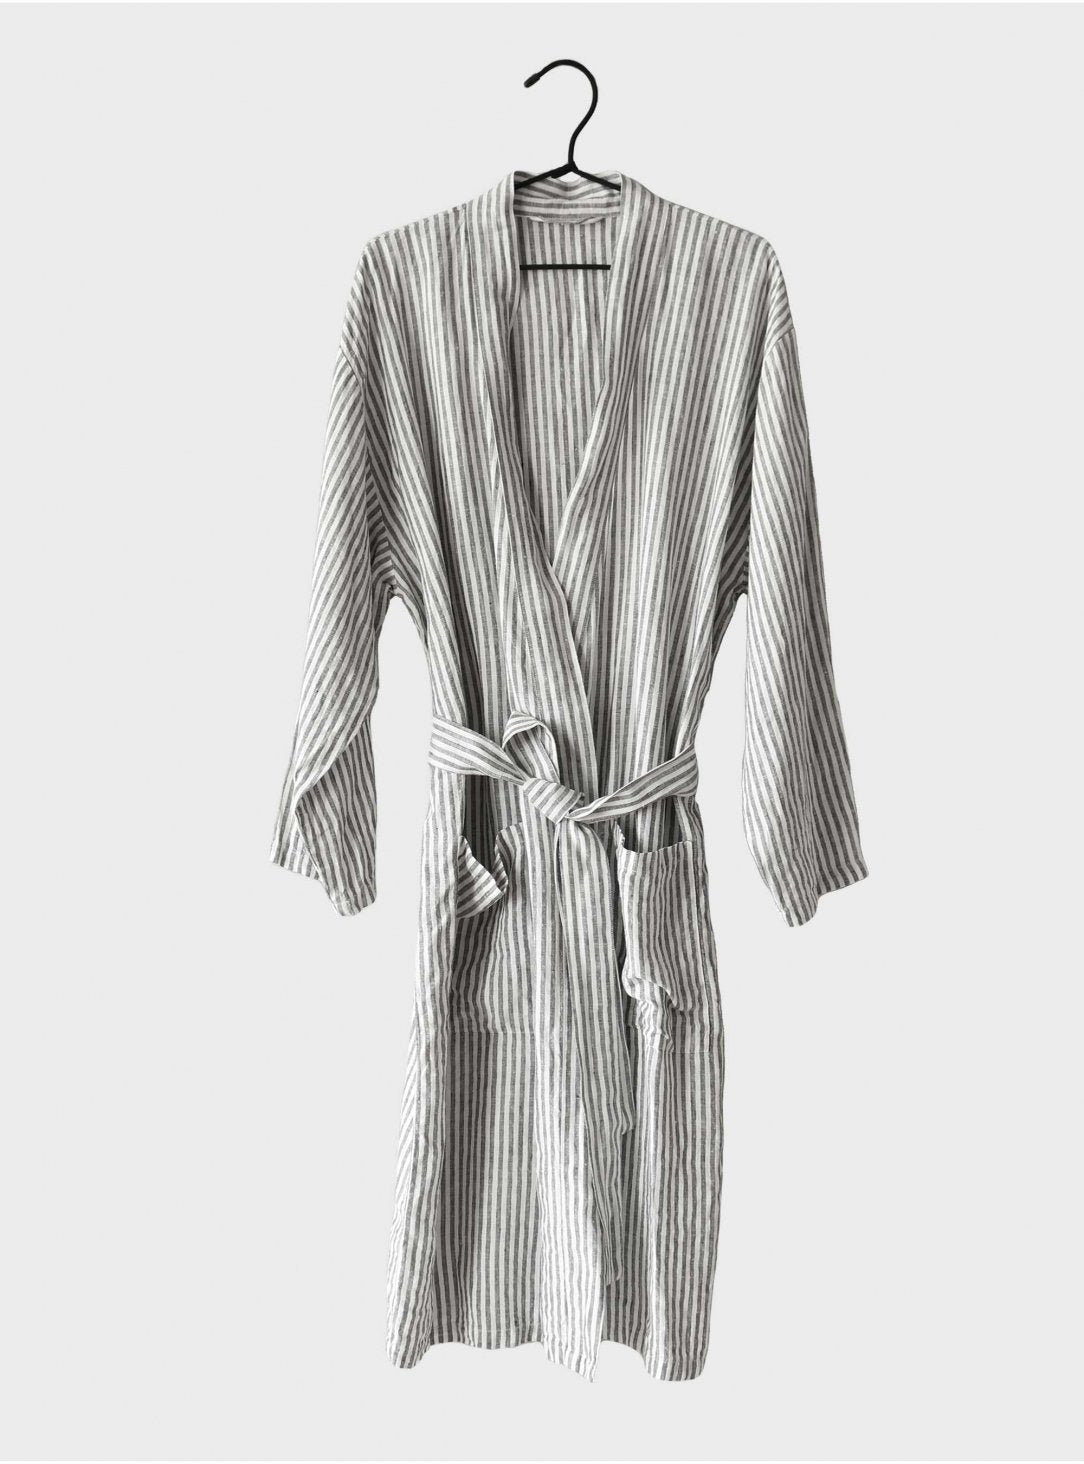 Linane hommikumantel Stripes L/XL